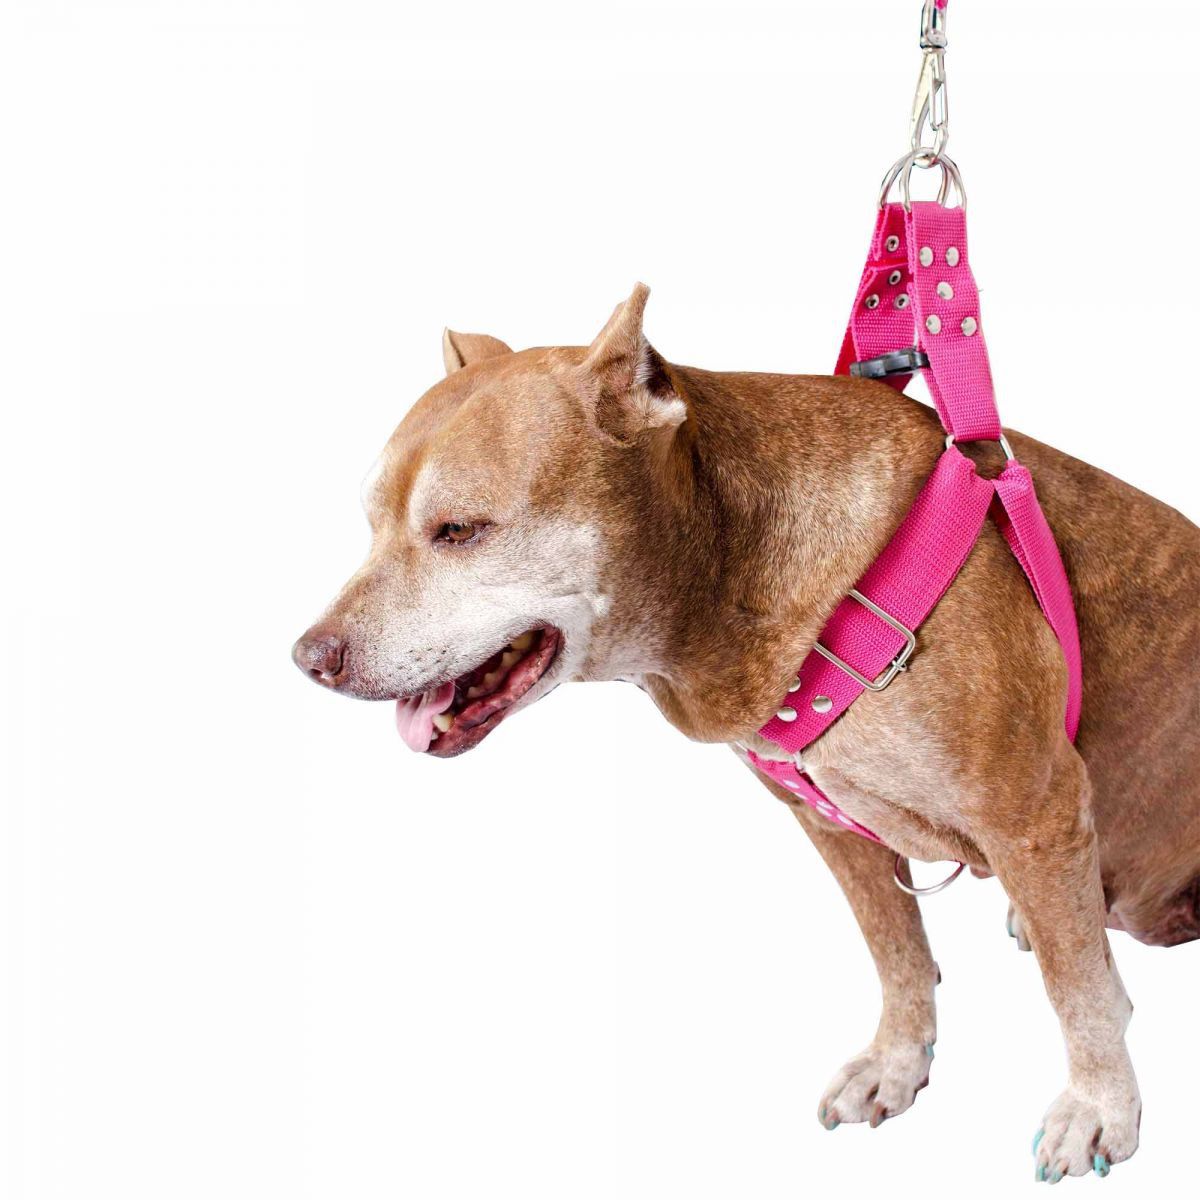 Kit 2x Coleira Peitoral Cachorro Guia Adaptador Cinto Segurança Tamanho G - Cores Rosa + Vermelha